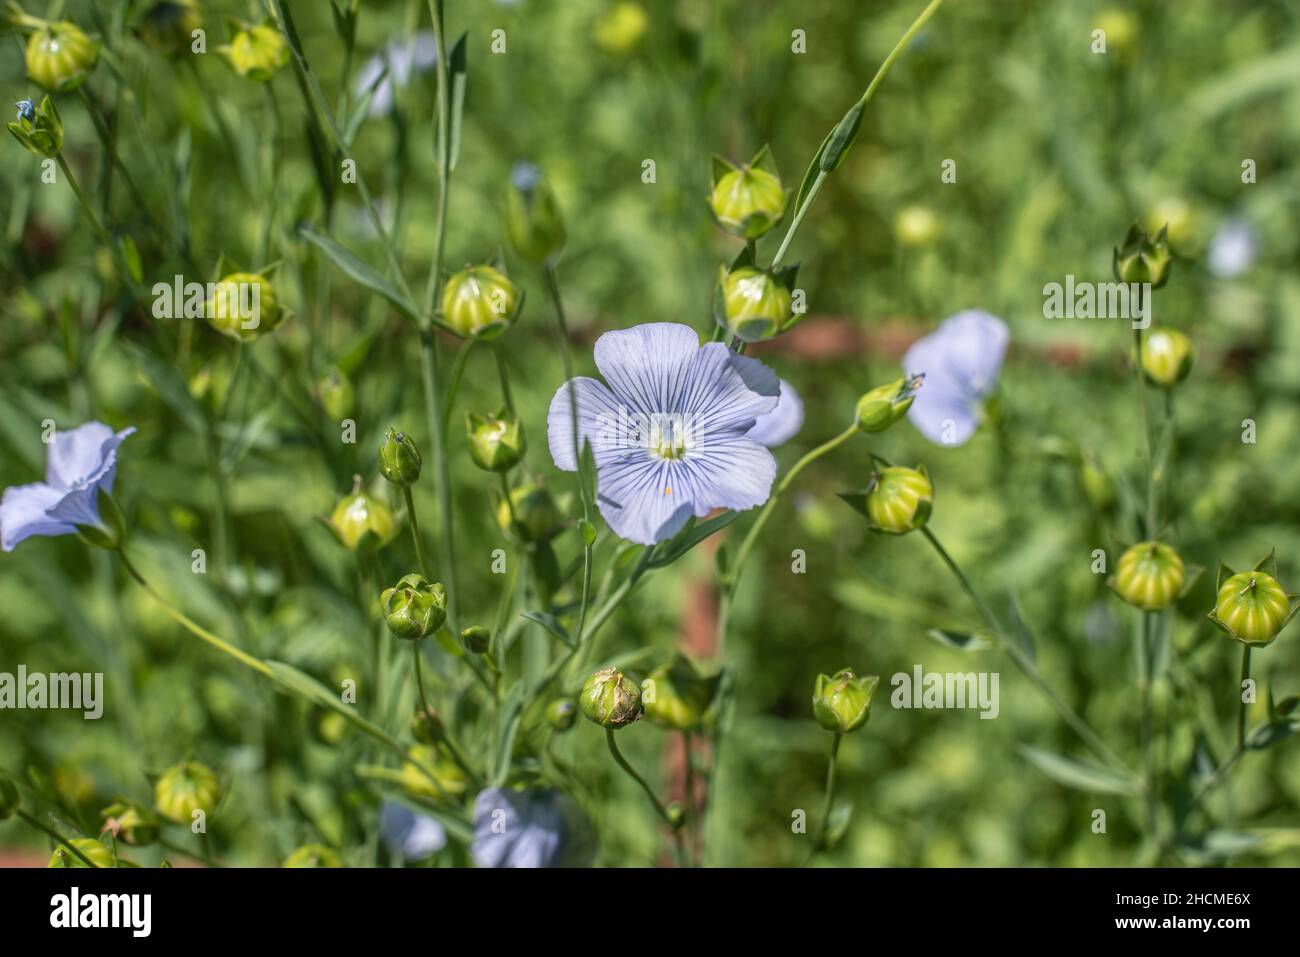 primer plano de la flor azul y las semillas verdes de maduración de una planta de lino Foto de stock